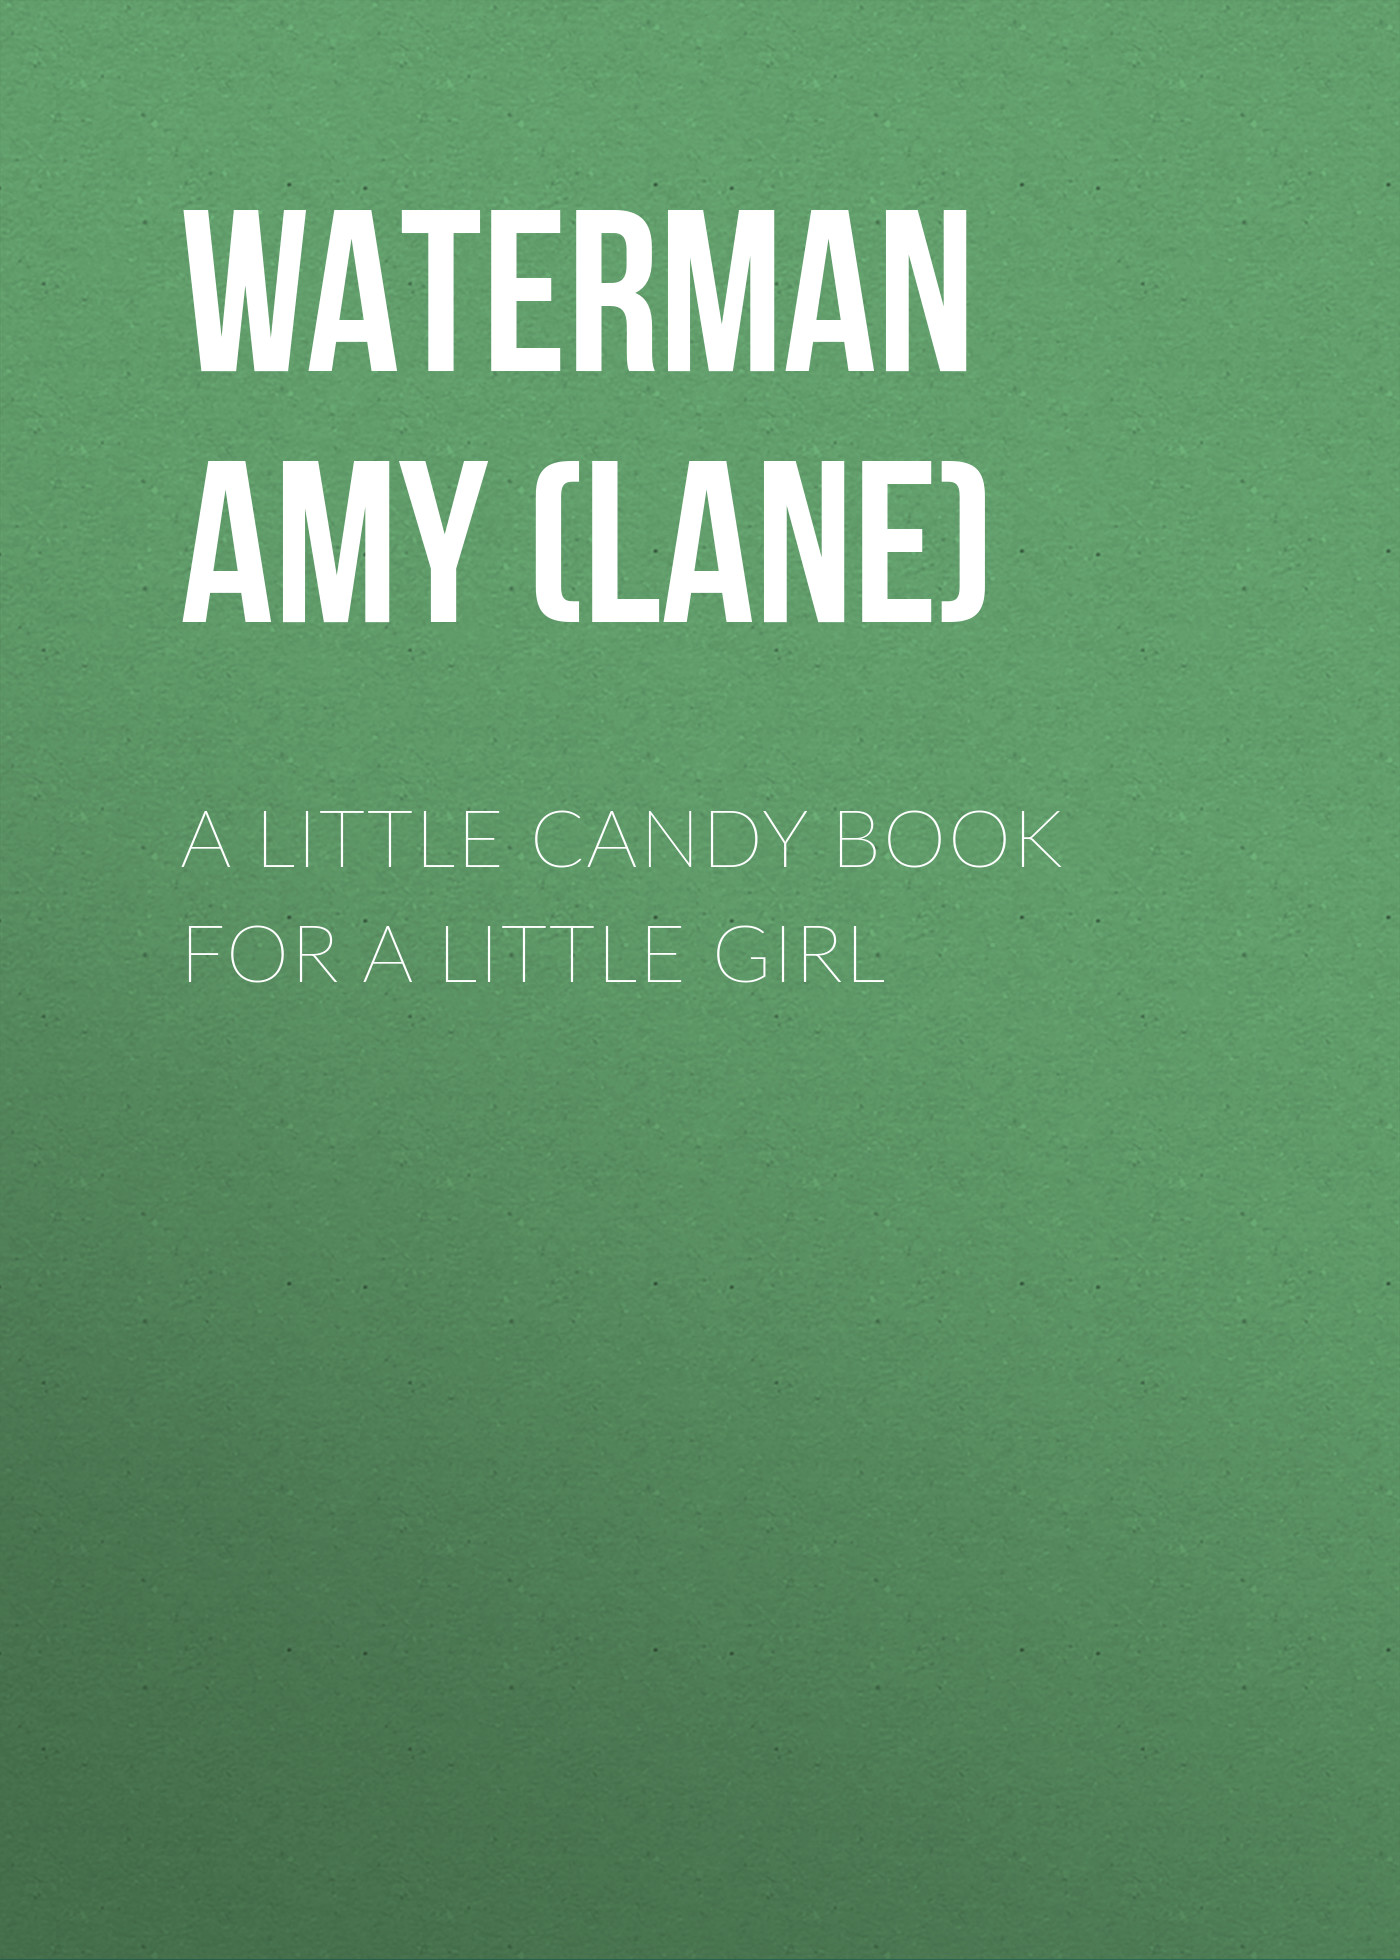 Книга A Little Candy Book for a Little Girl из серии , созданная Amy Waterman, может относится к жанру Зарубежные детские книги, Зарубежная старинная литература, Зарубежная классика. Стоимость электронной книги A Little Candy Book for a Little Girl с идентификатором 34335818 составляет 0 руб.